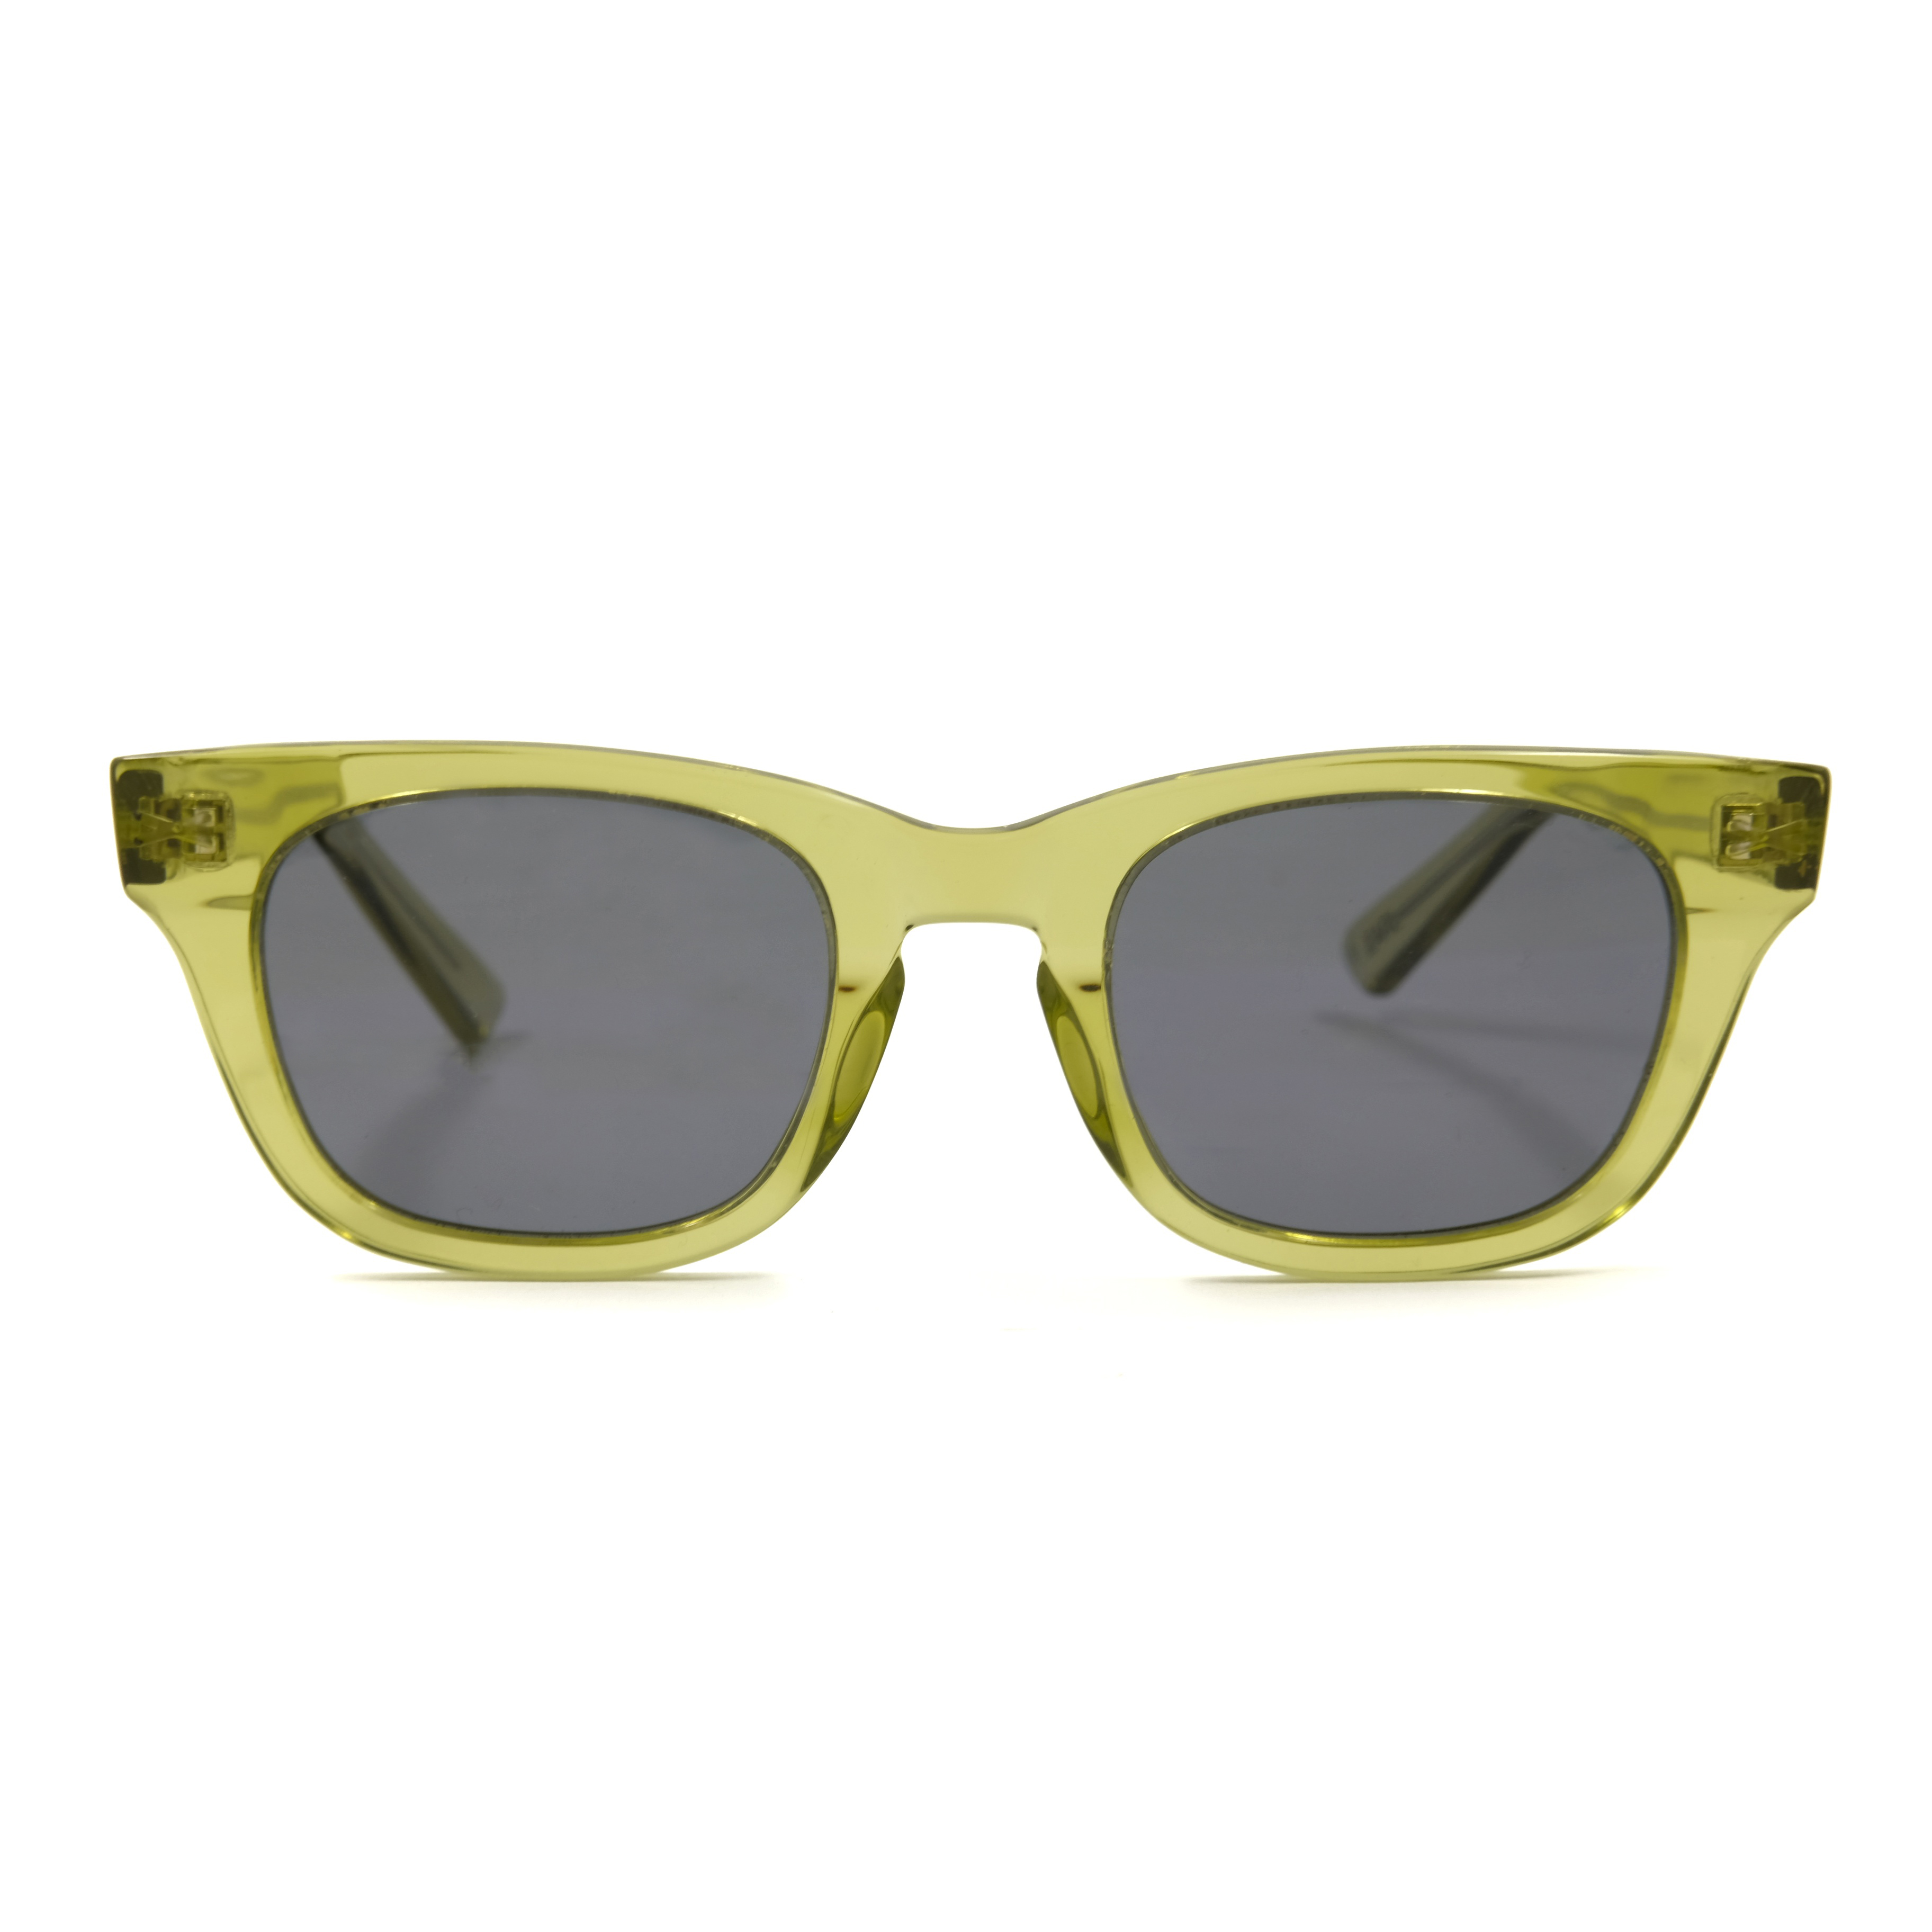 Gafas de sol personalizadas de diseño más nuevo, gafas de sol Suqare de acetato verde, gafas de sol globales, salida de fábrica